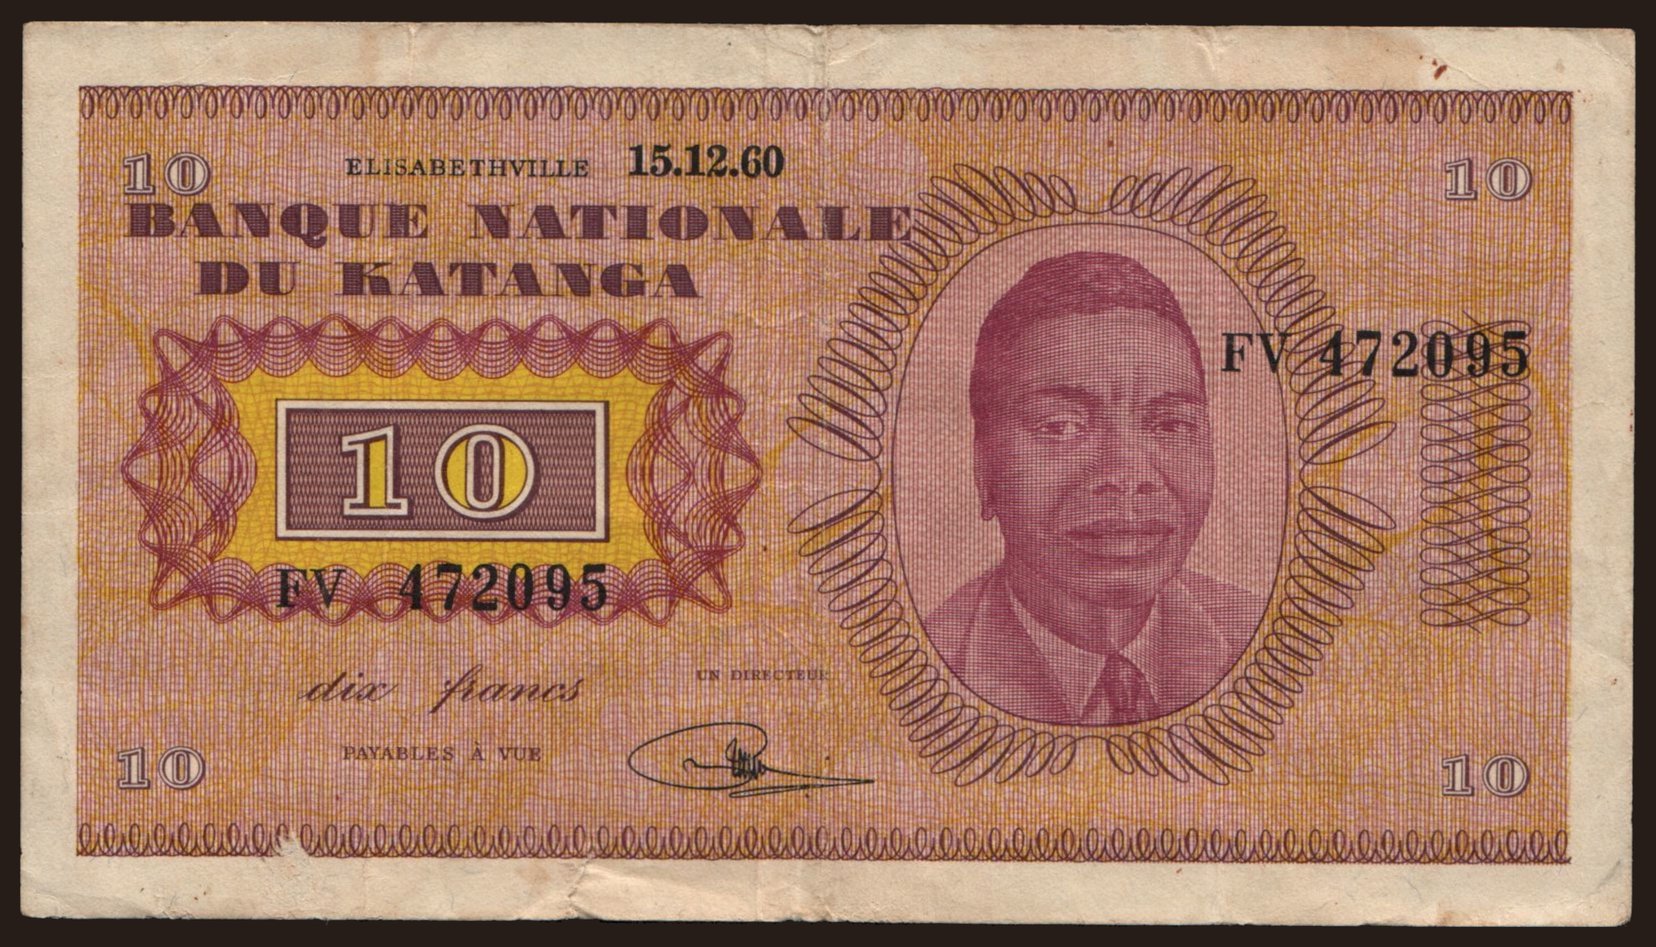 10 francs, 1960